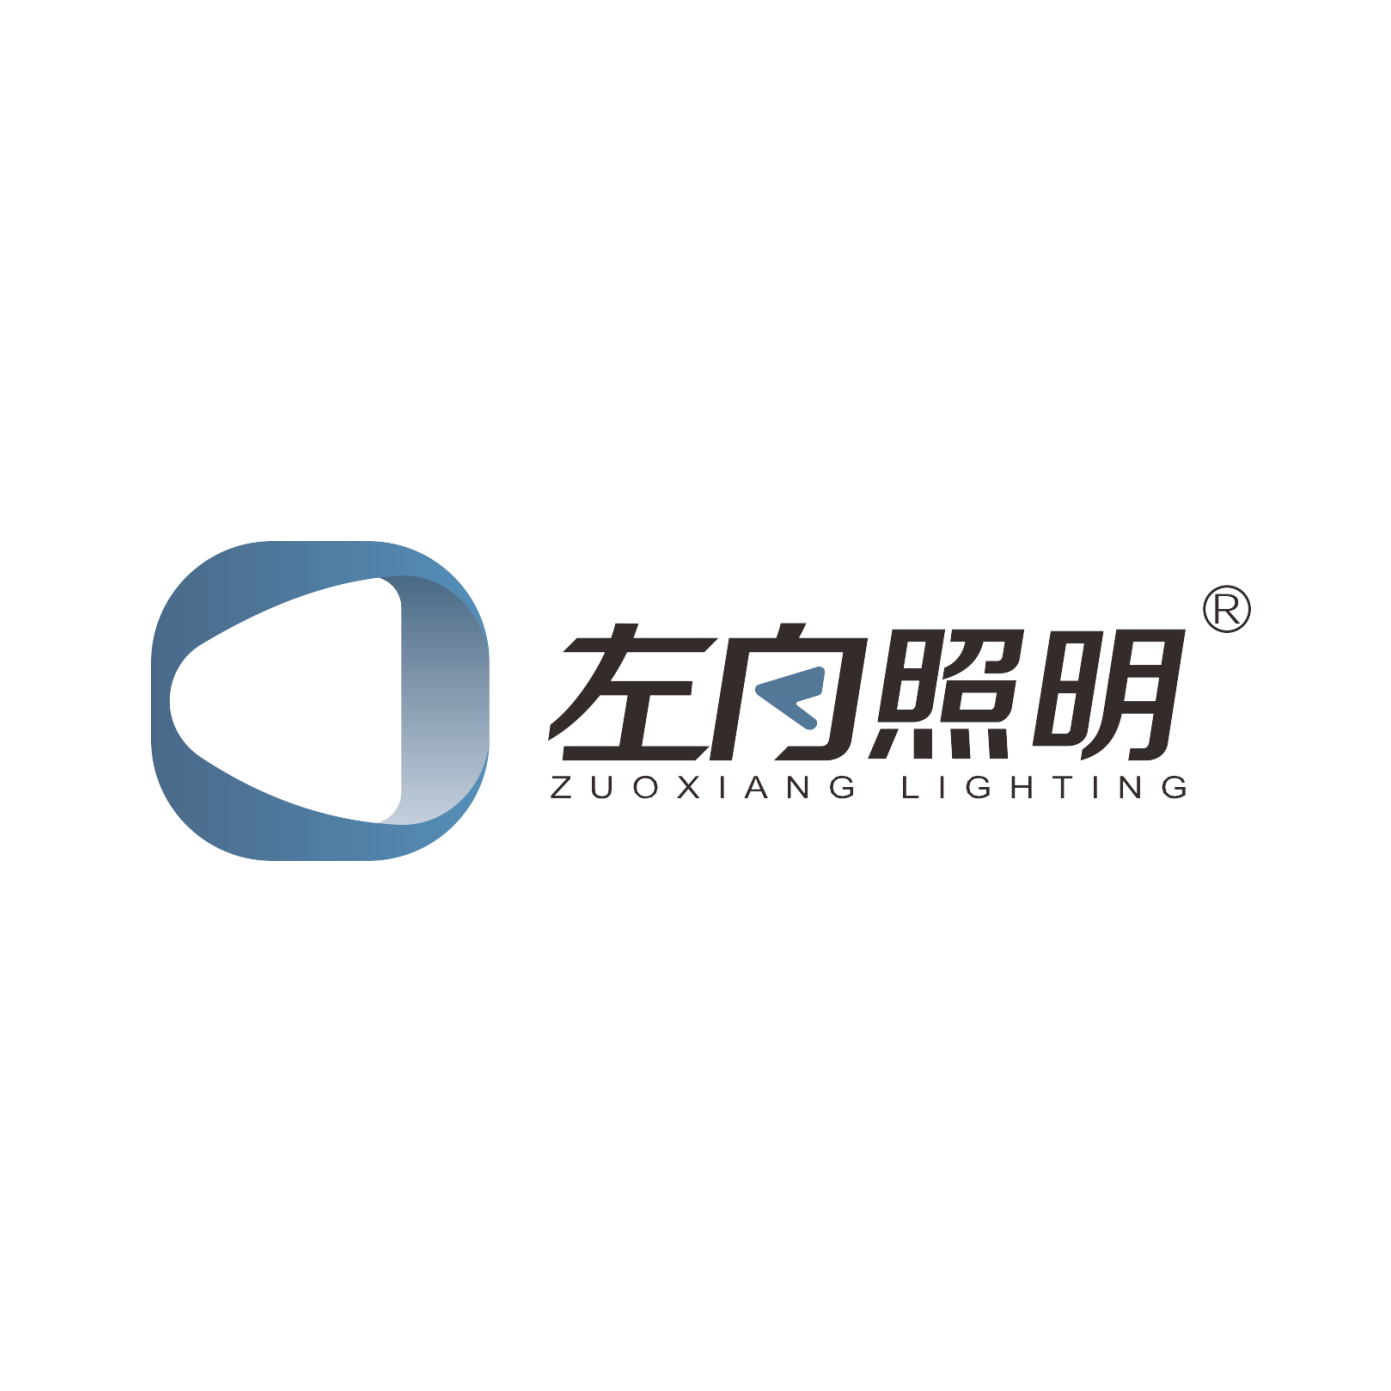 Guangdong Zuoxiang Lighting Co., Ltd